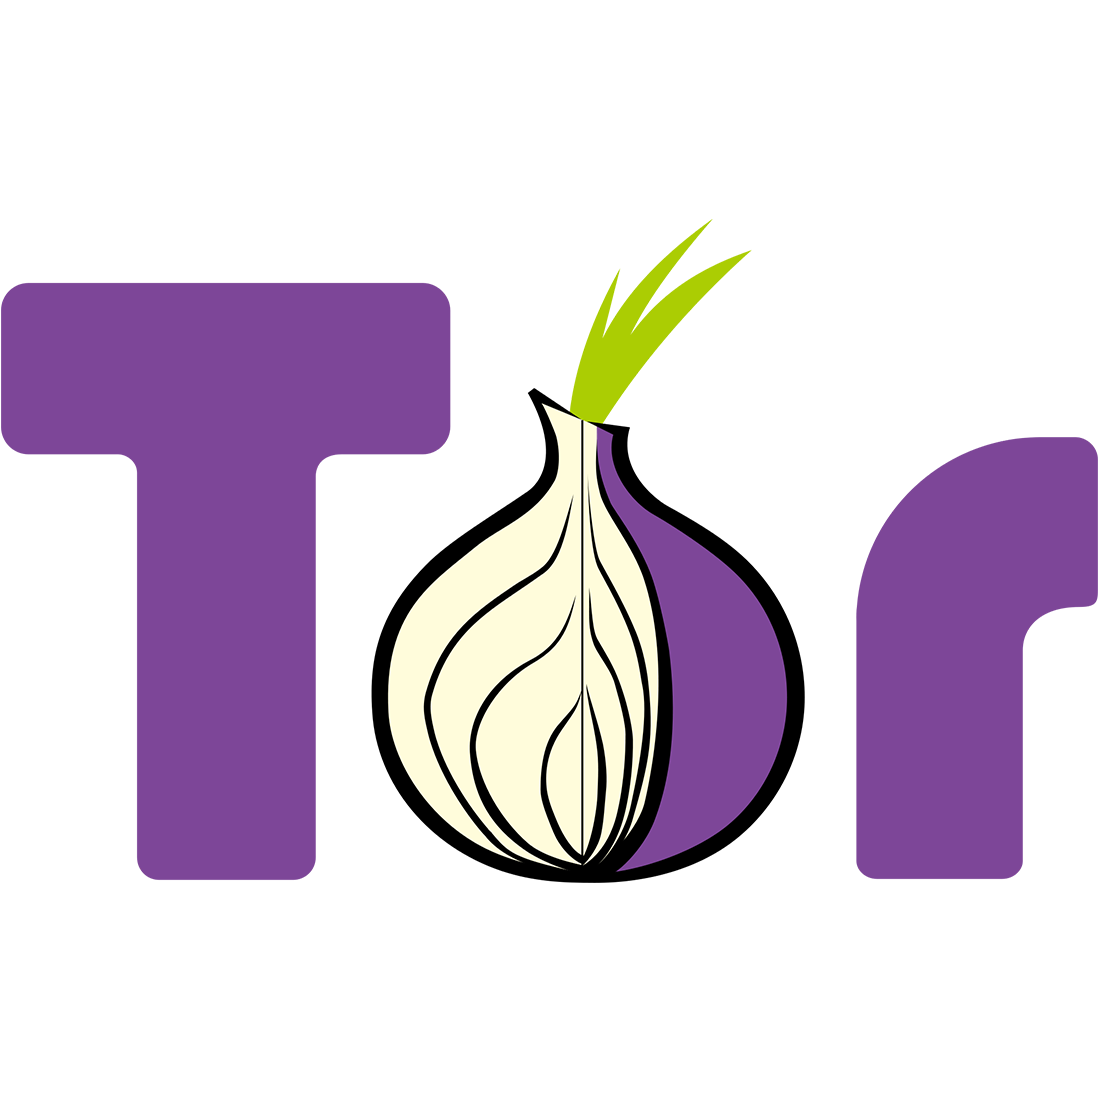 TOR,невидимый интернет,скрытый интернет,l2P,Torsearch.se,Tor2web,Torch,Grams,Hidden Wiki,DeepDotWeb,скрытая википедия, Поисковики для Tor: как заглянуть внутрь глубокого интернета?